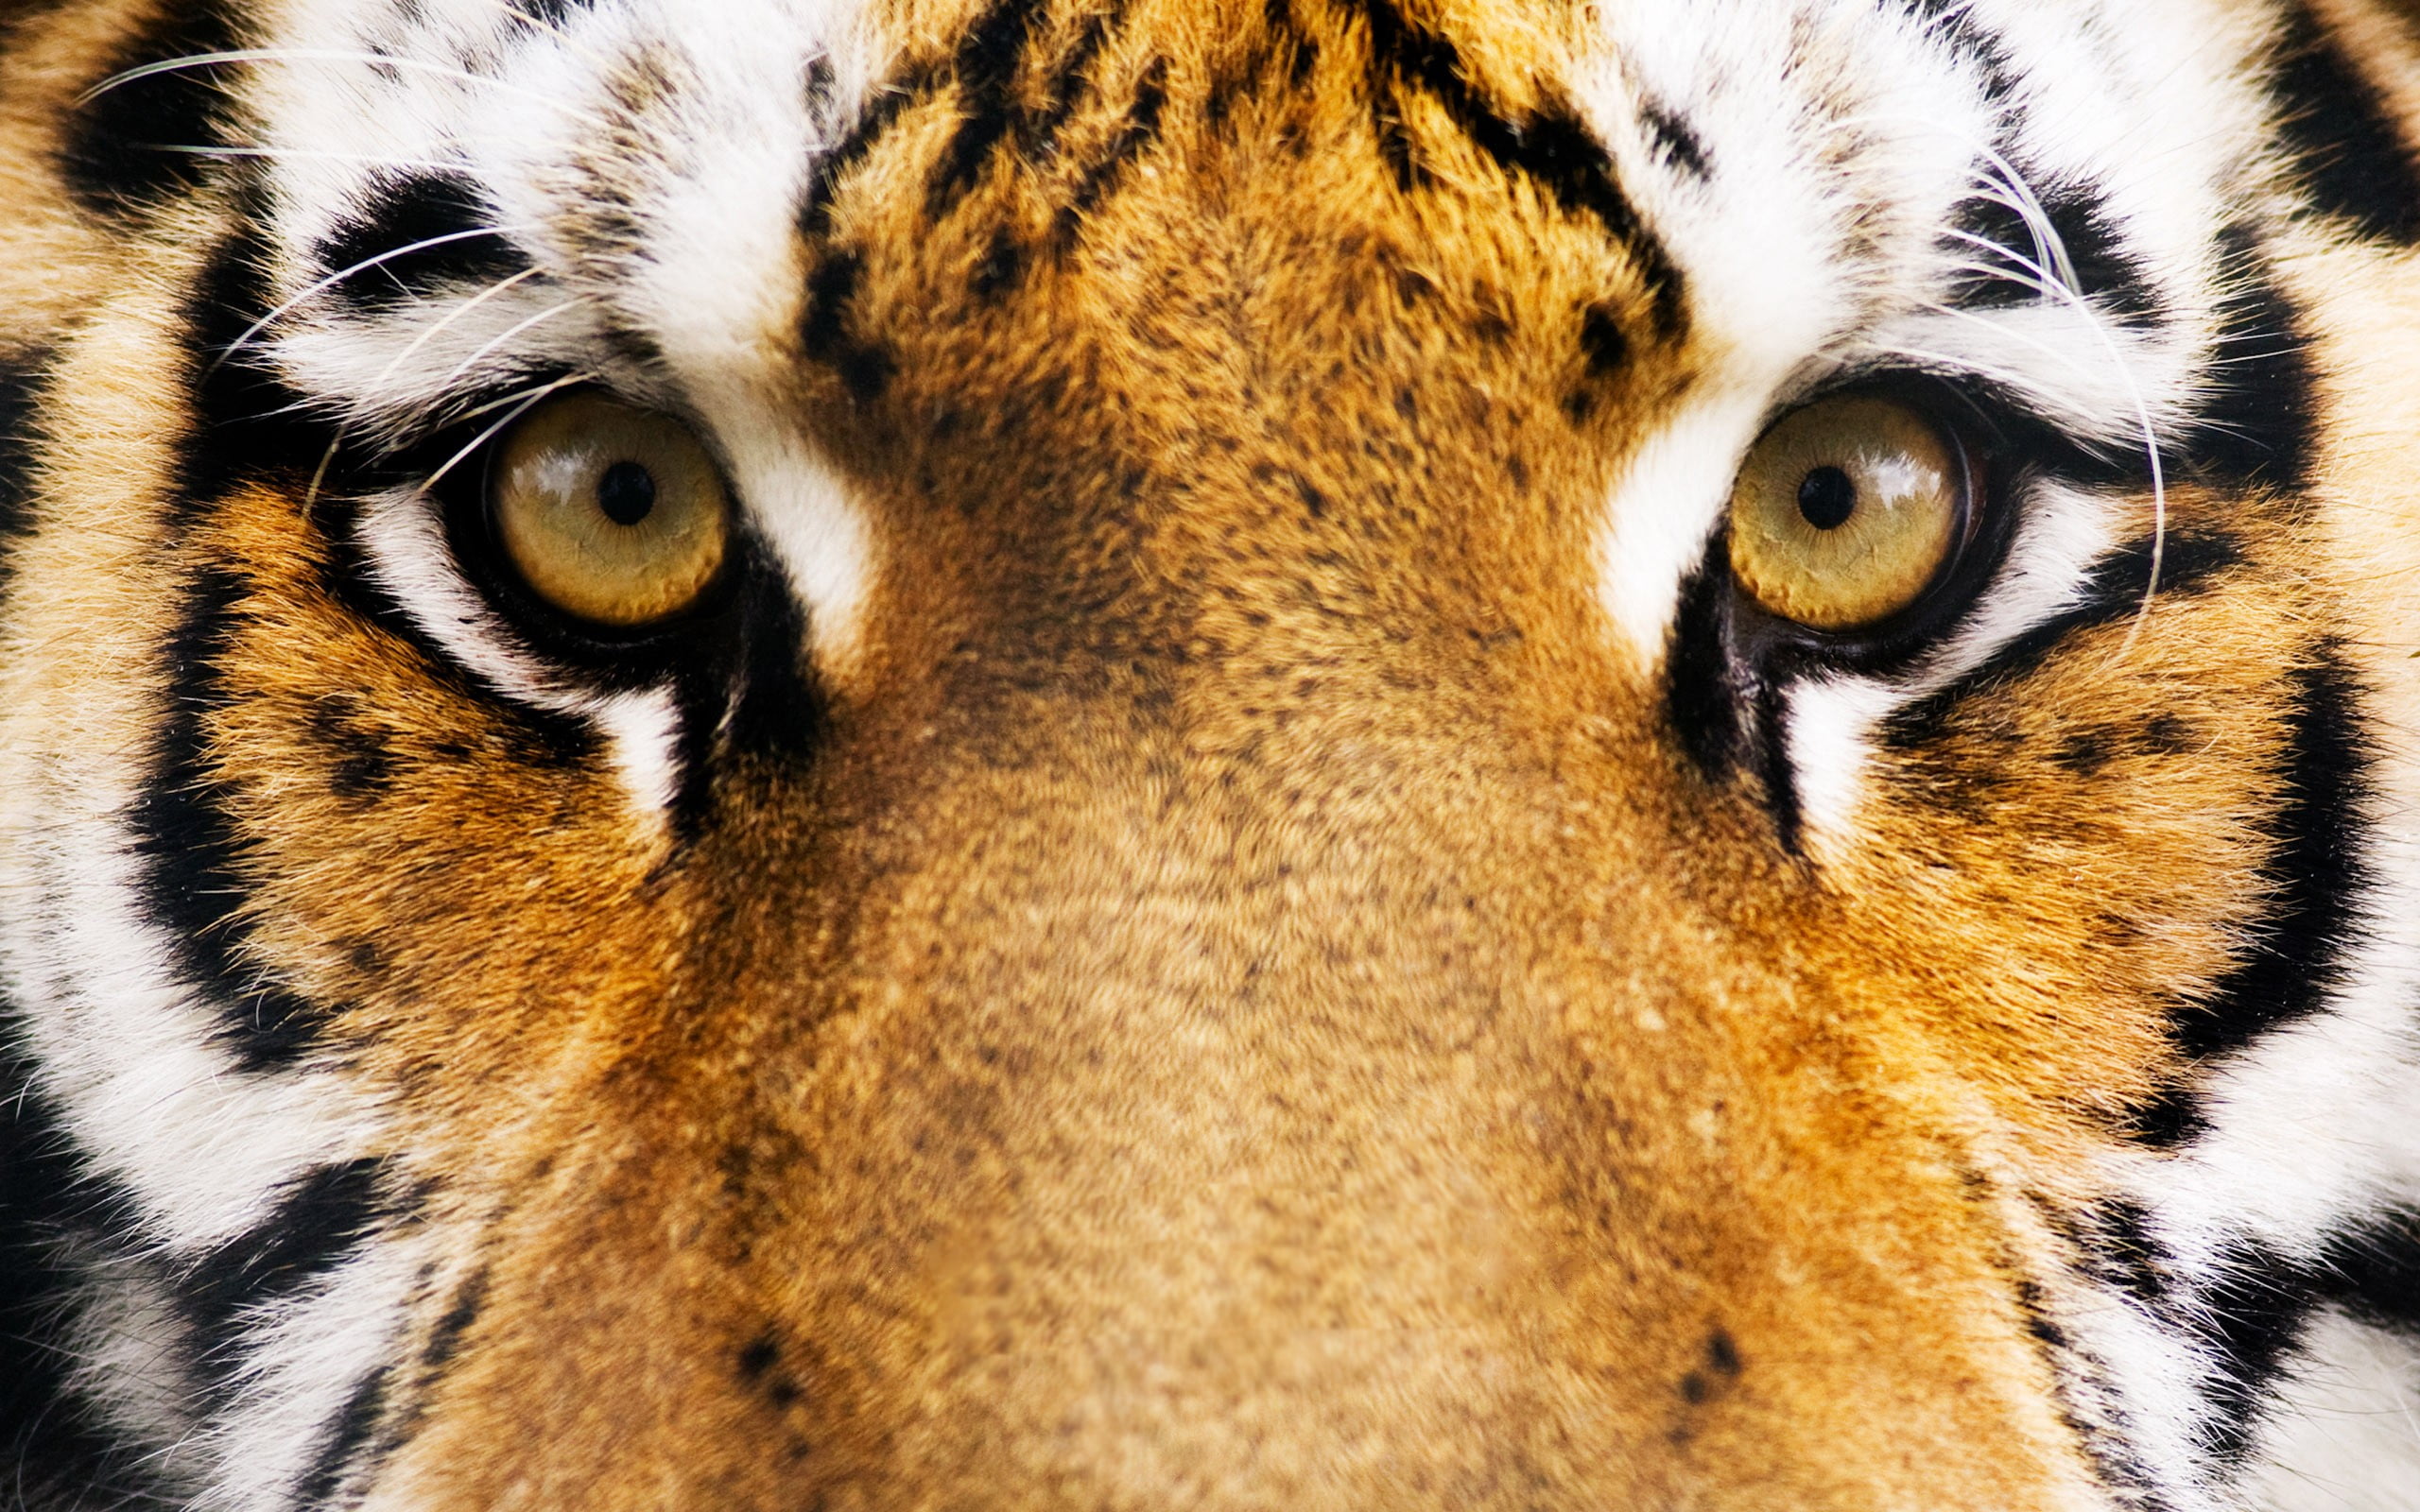 Tiger face, animals, eyes, tiger